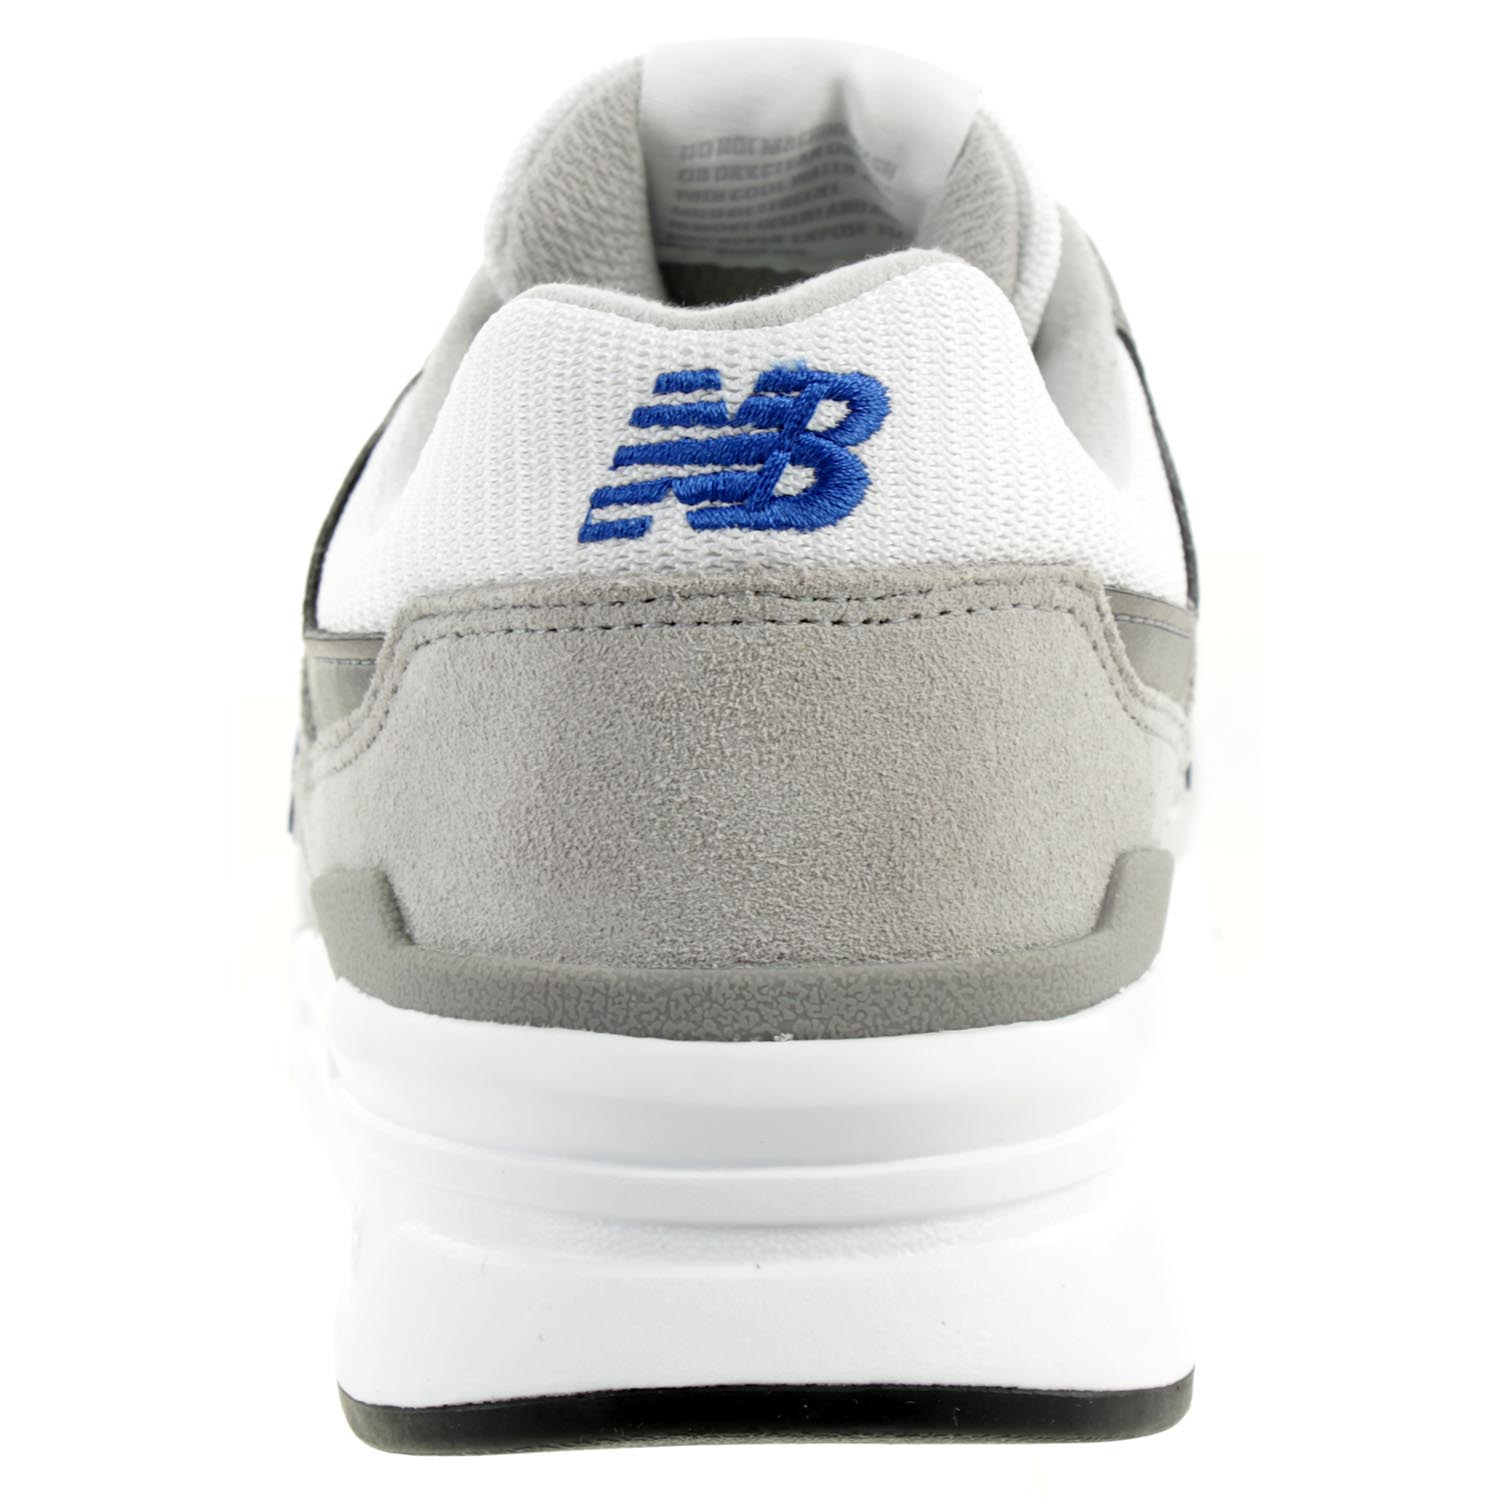 New Balance CM997 HEY Sneaker Herren Schuhe grau